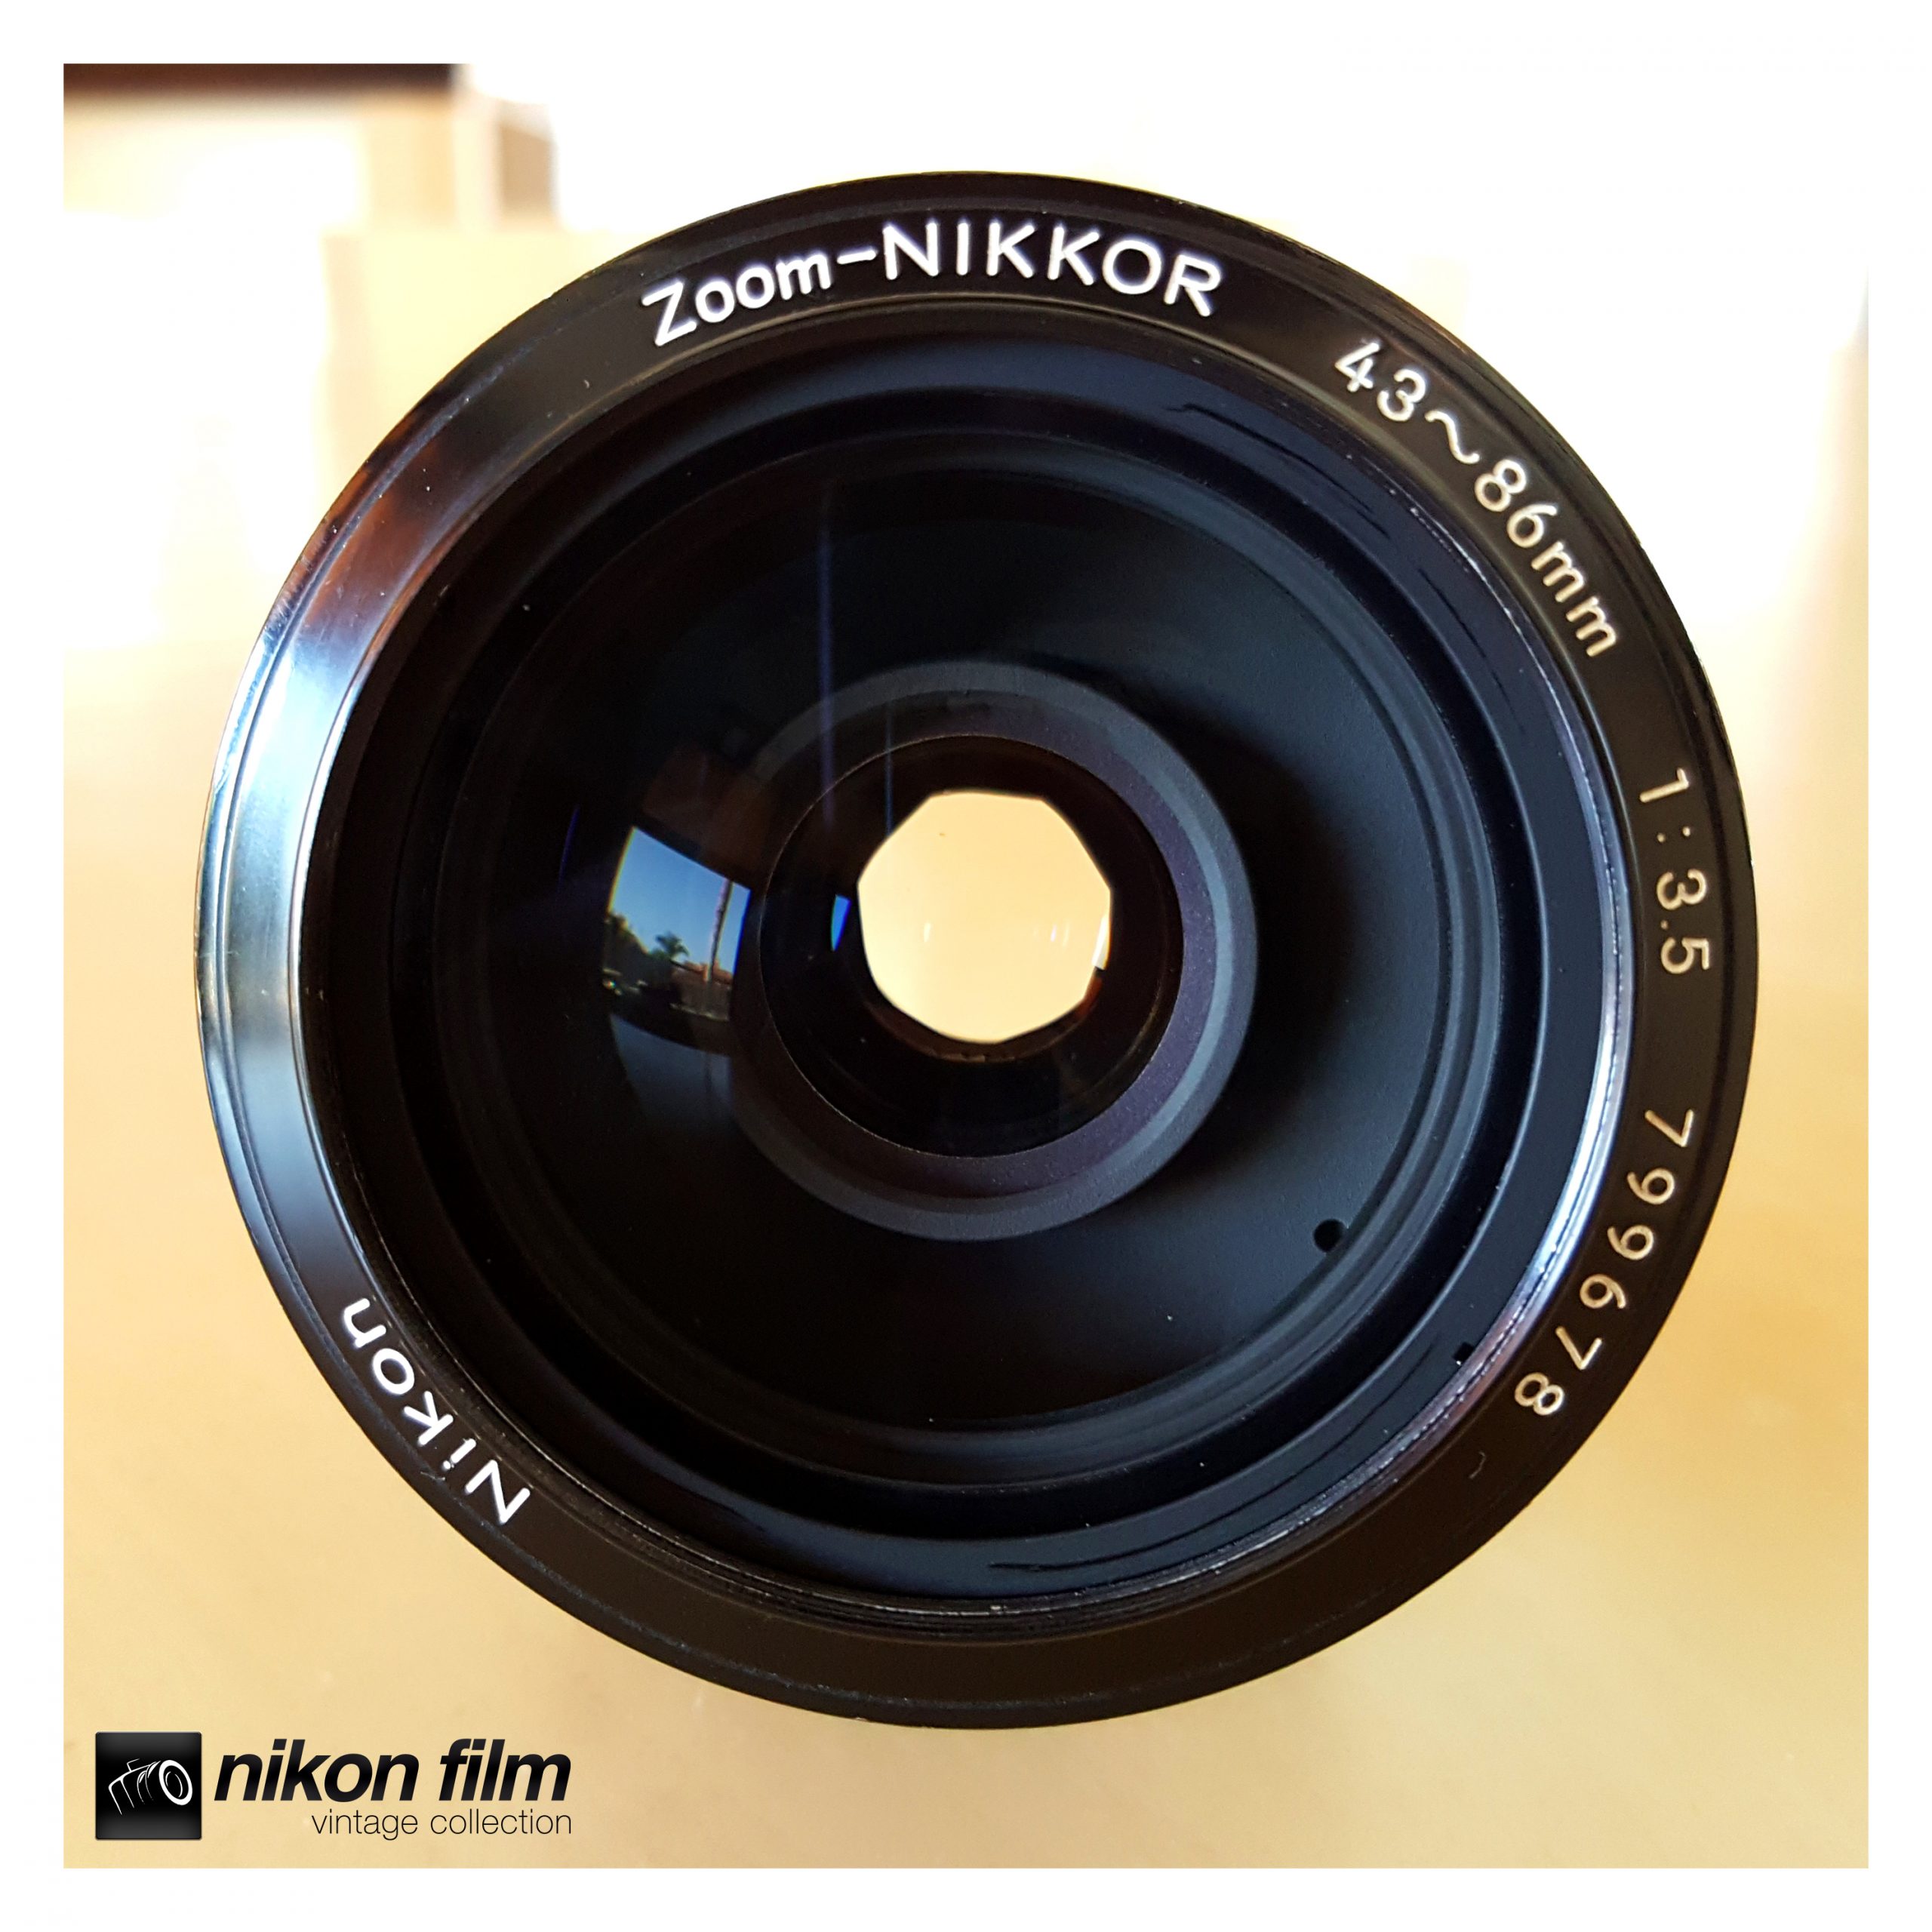 Nikon Zoom-Nikkor 43-86mm F/3.5 K - Boxed